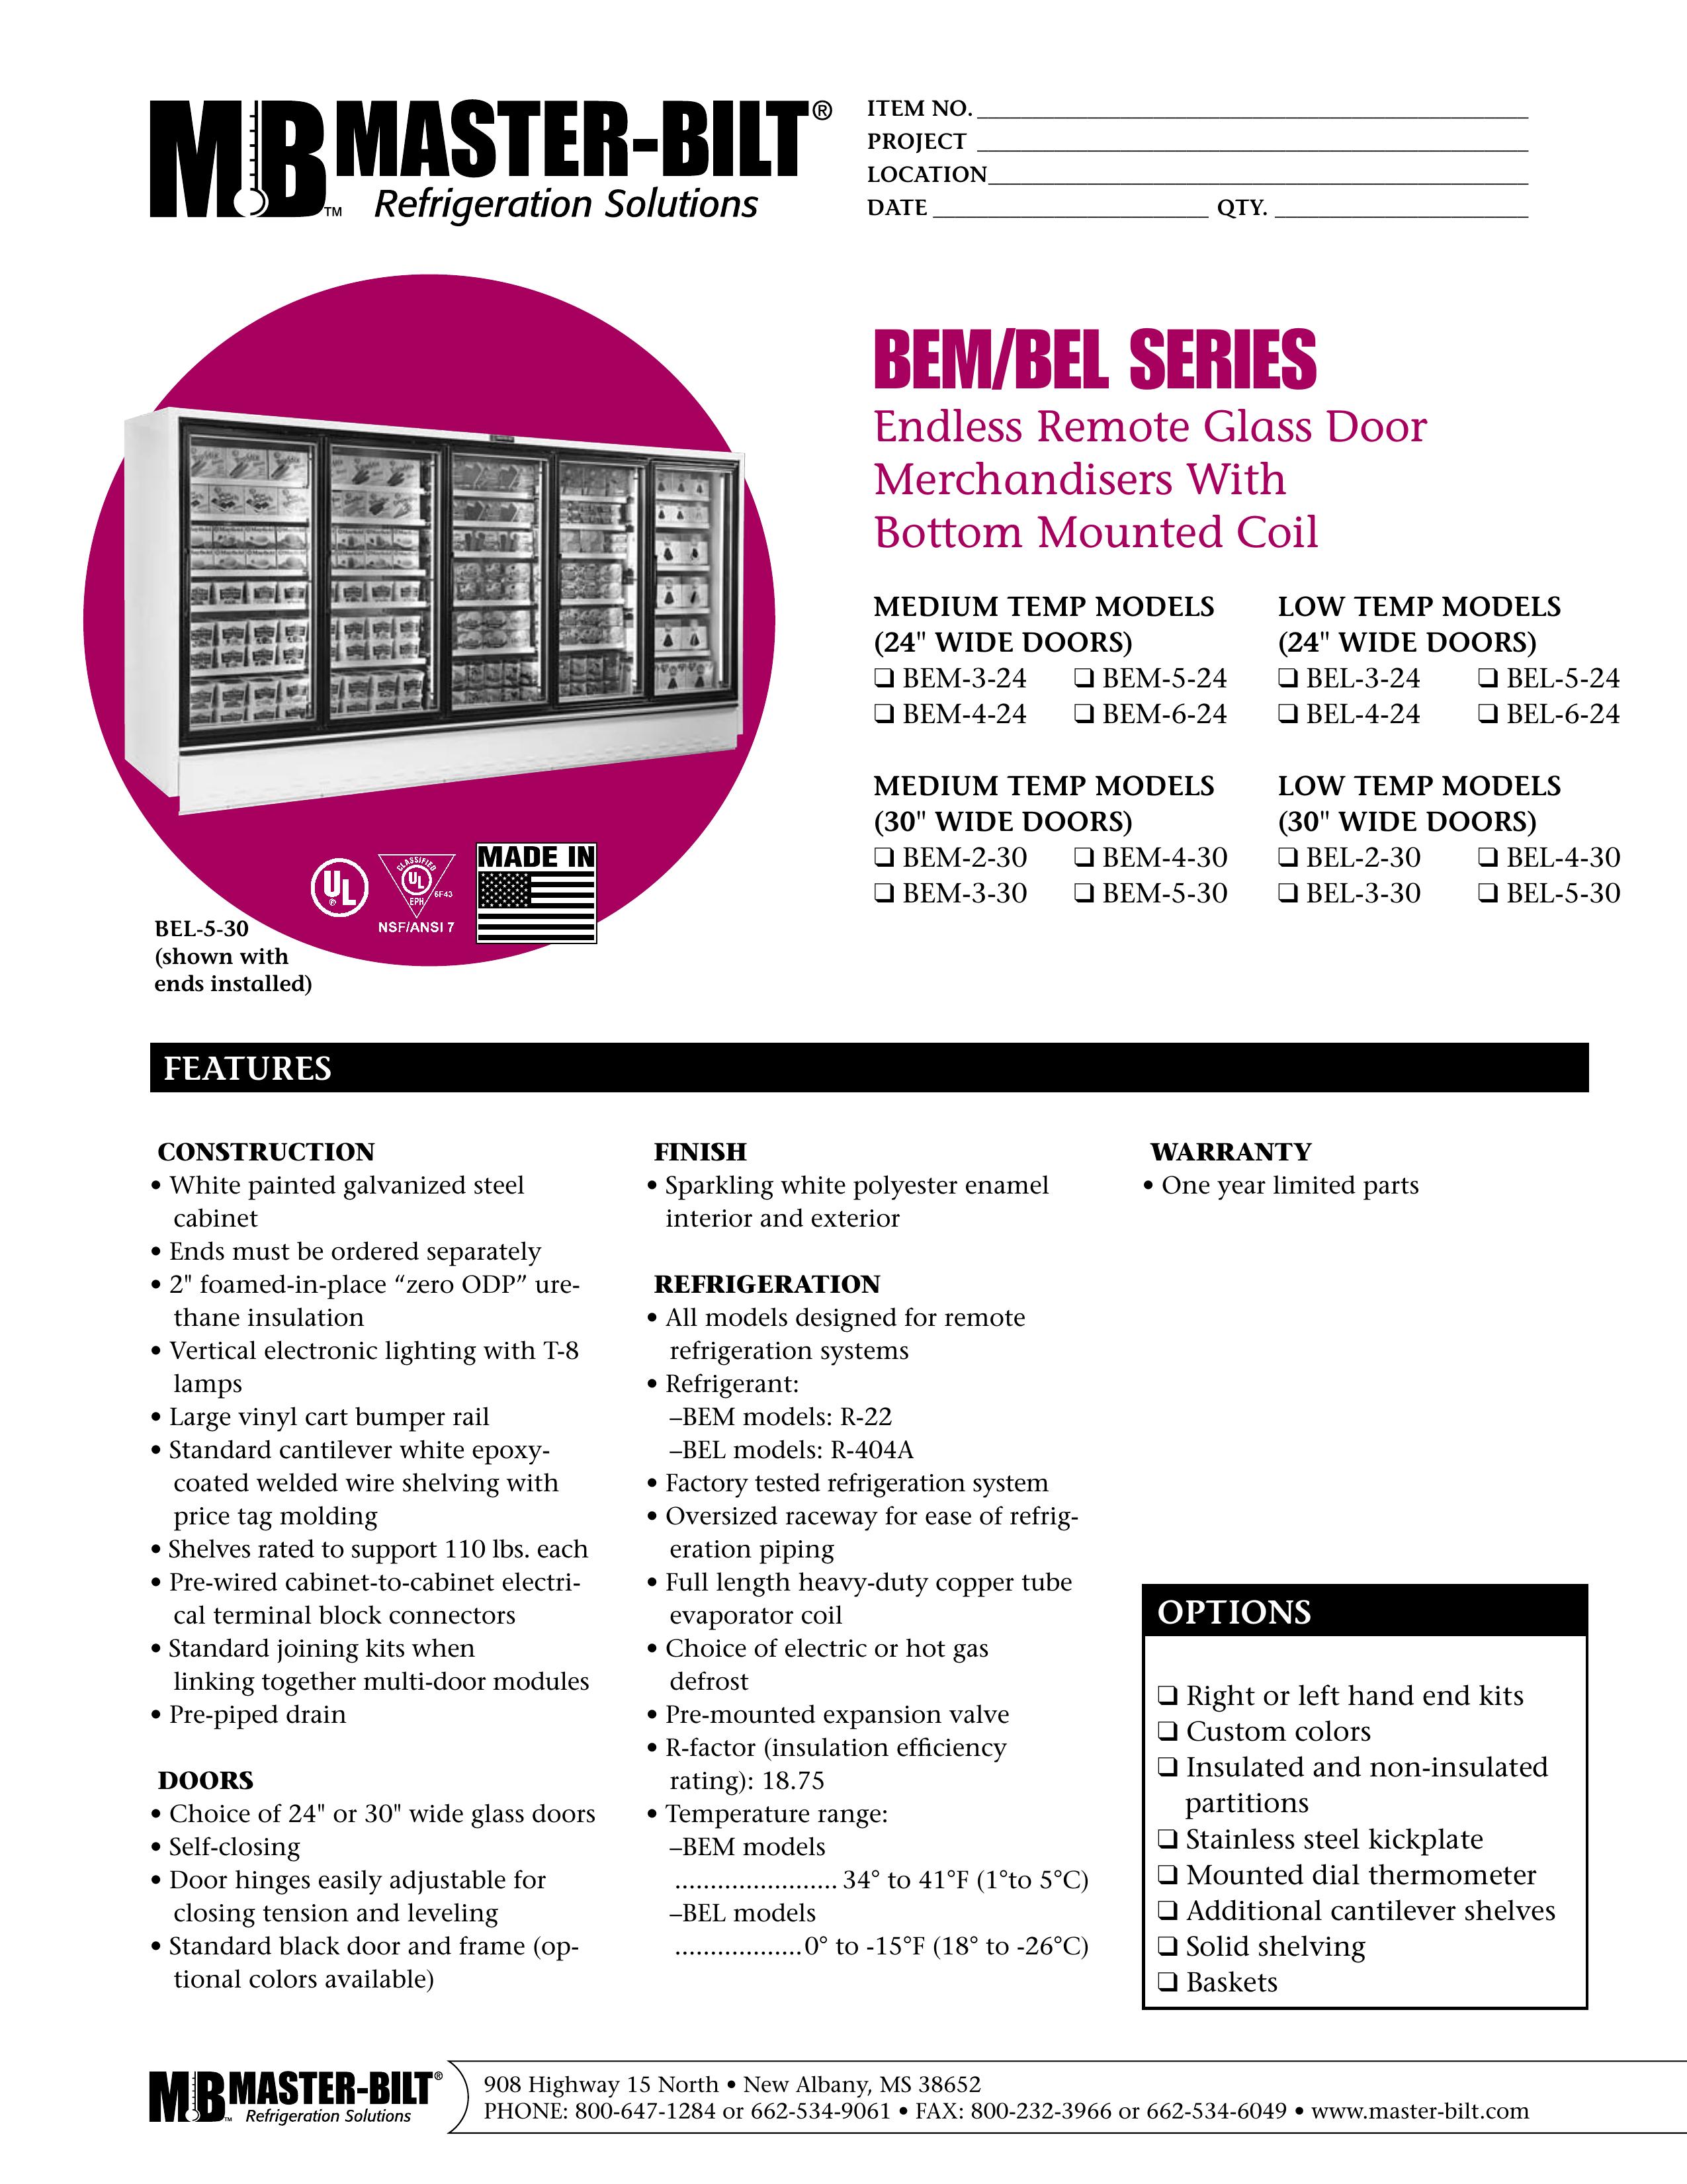 Master Bilt BEL-6-24 Refrigerator User Manual